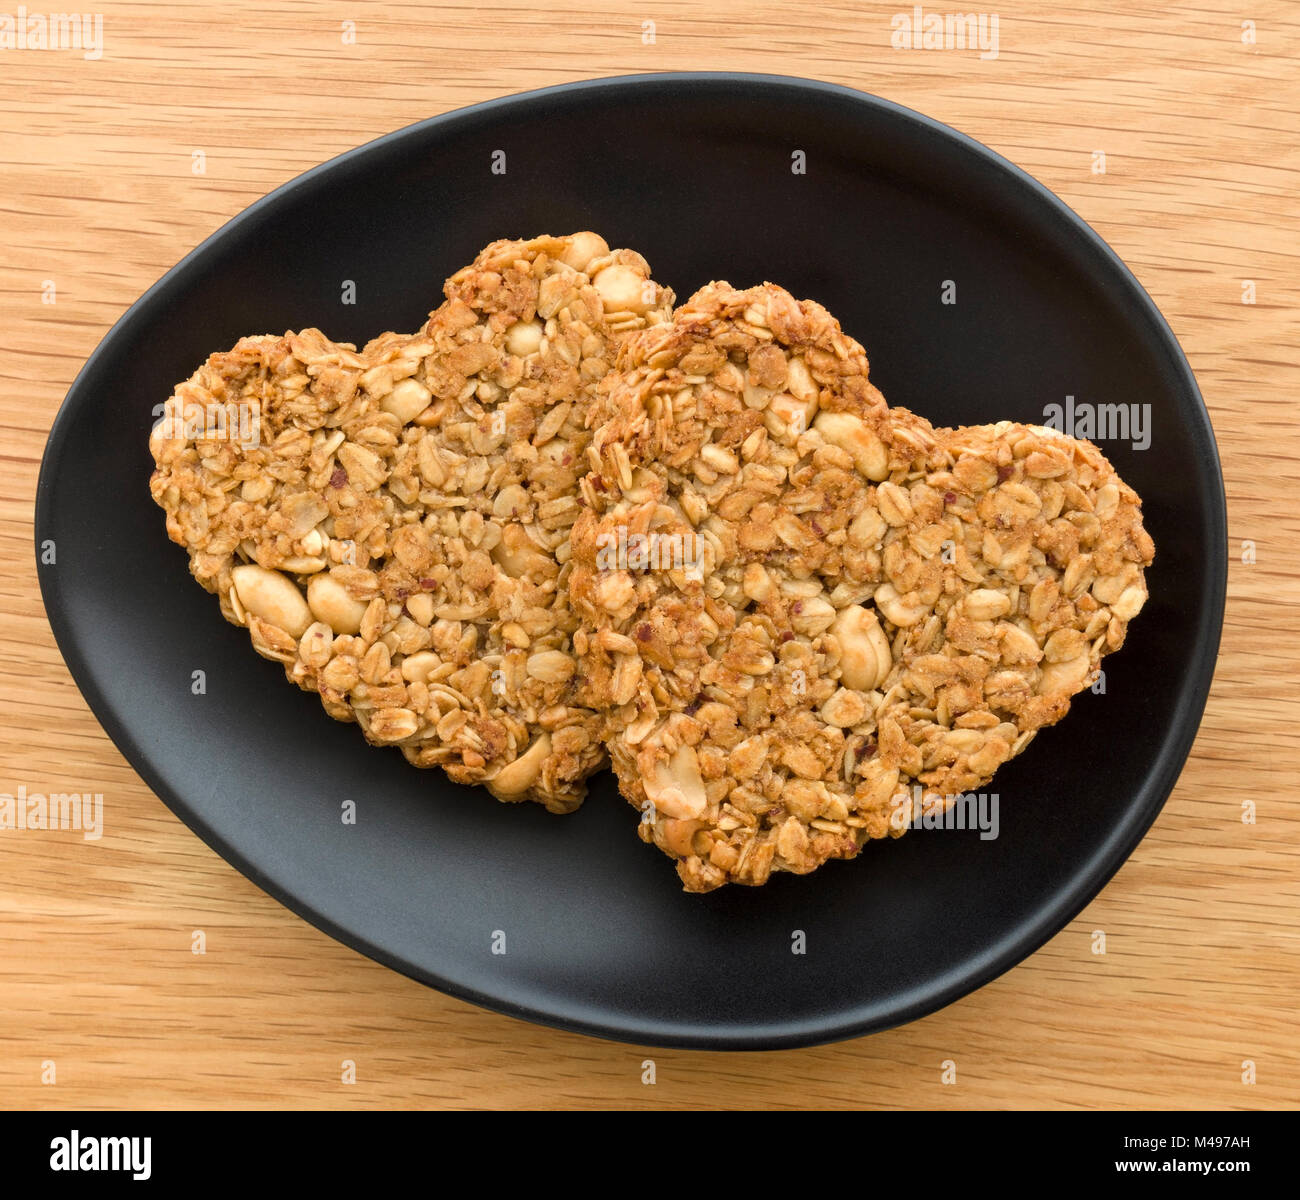 Dos caseras de maní en forma de corazón y avena flapjack galletas hechas para celebrar el Día de San Valentín en oval placa negra sobre la mesa de madera. Foto de stock